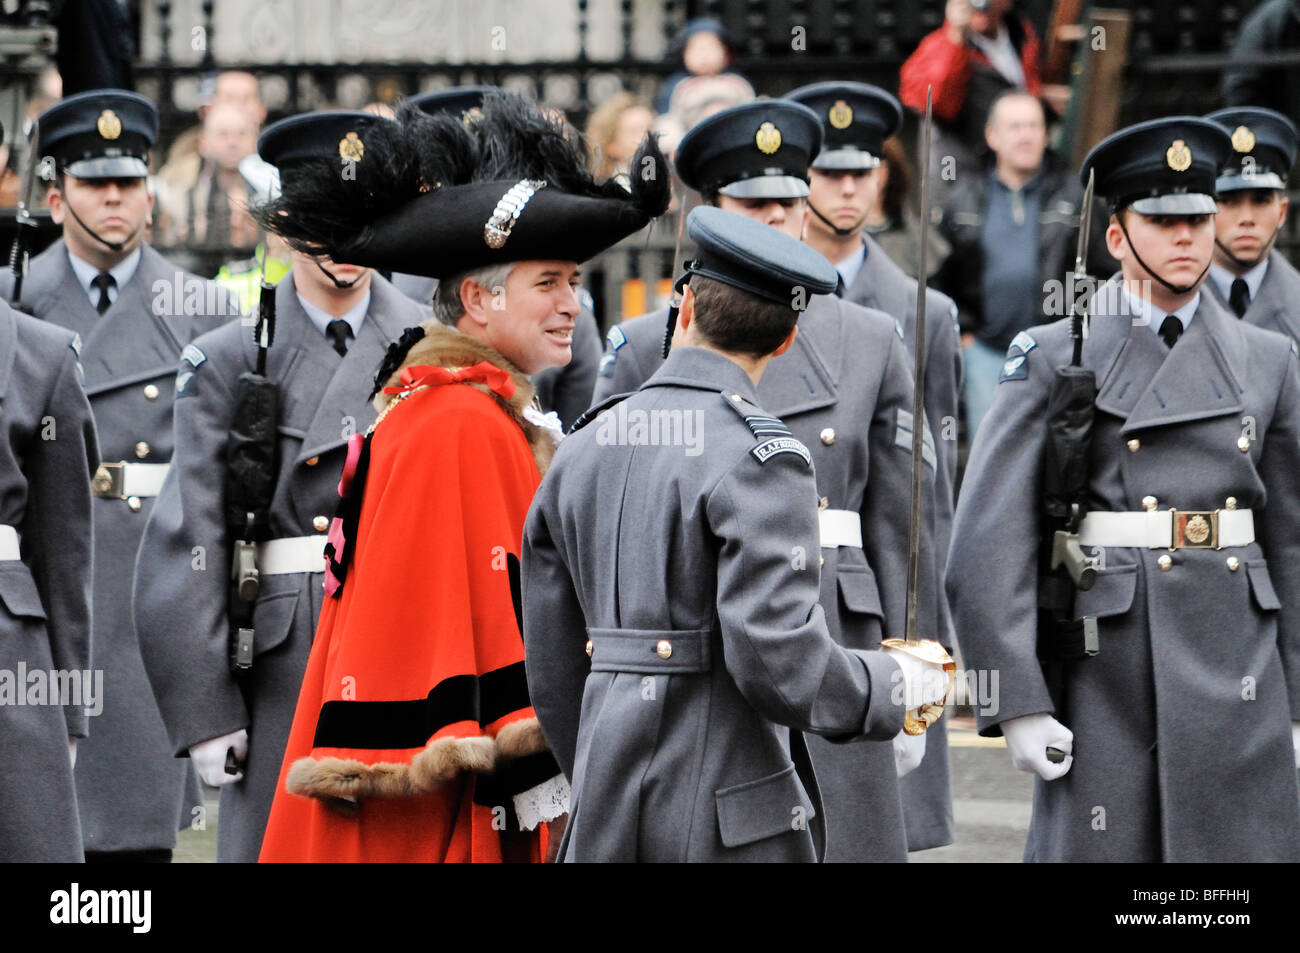 Nick Anstee, le 682nd Lord Maire de Londres passe les troupes en revue lors de la parade de 2009 à travers la ville de Londres Banque D'Images